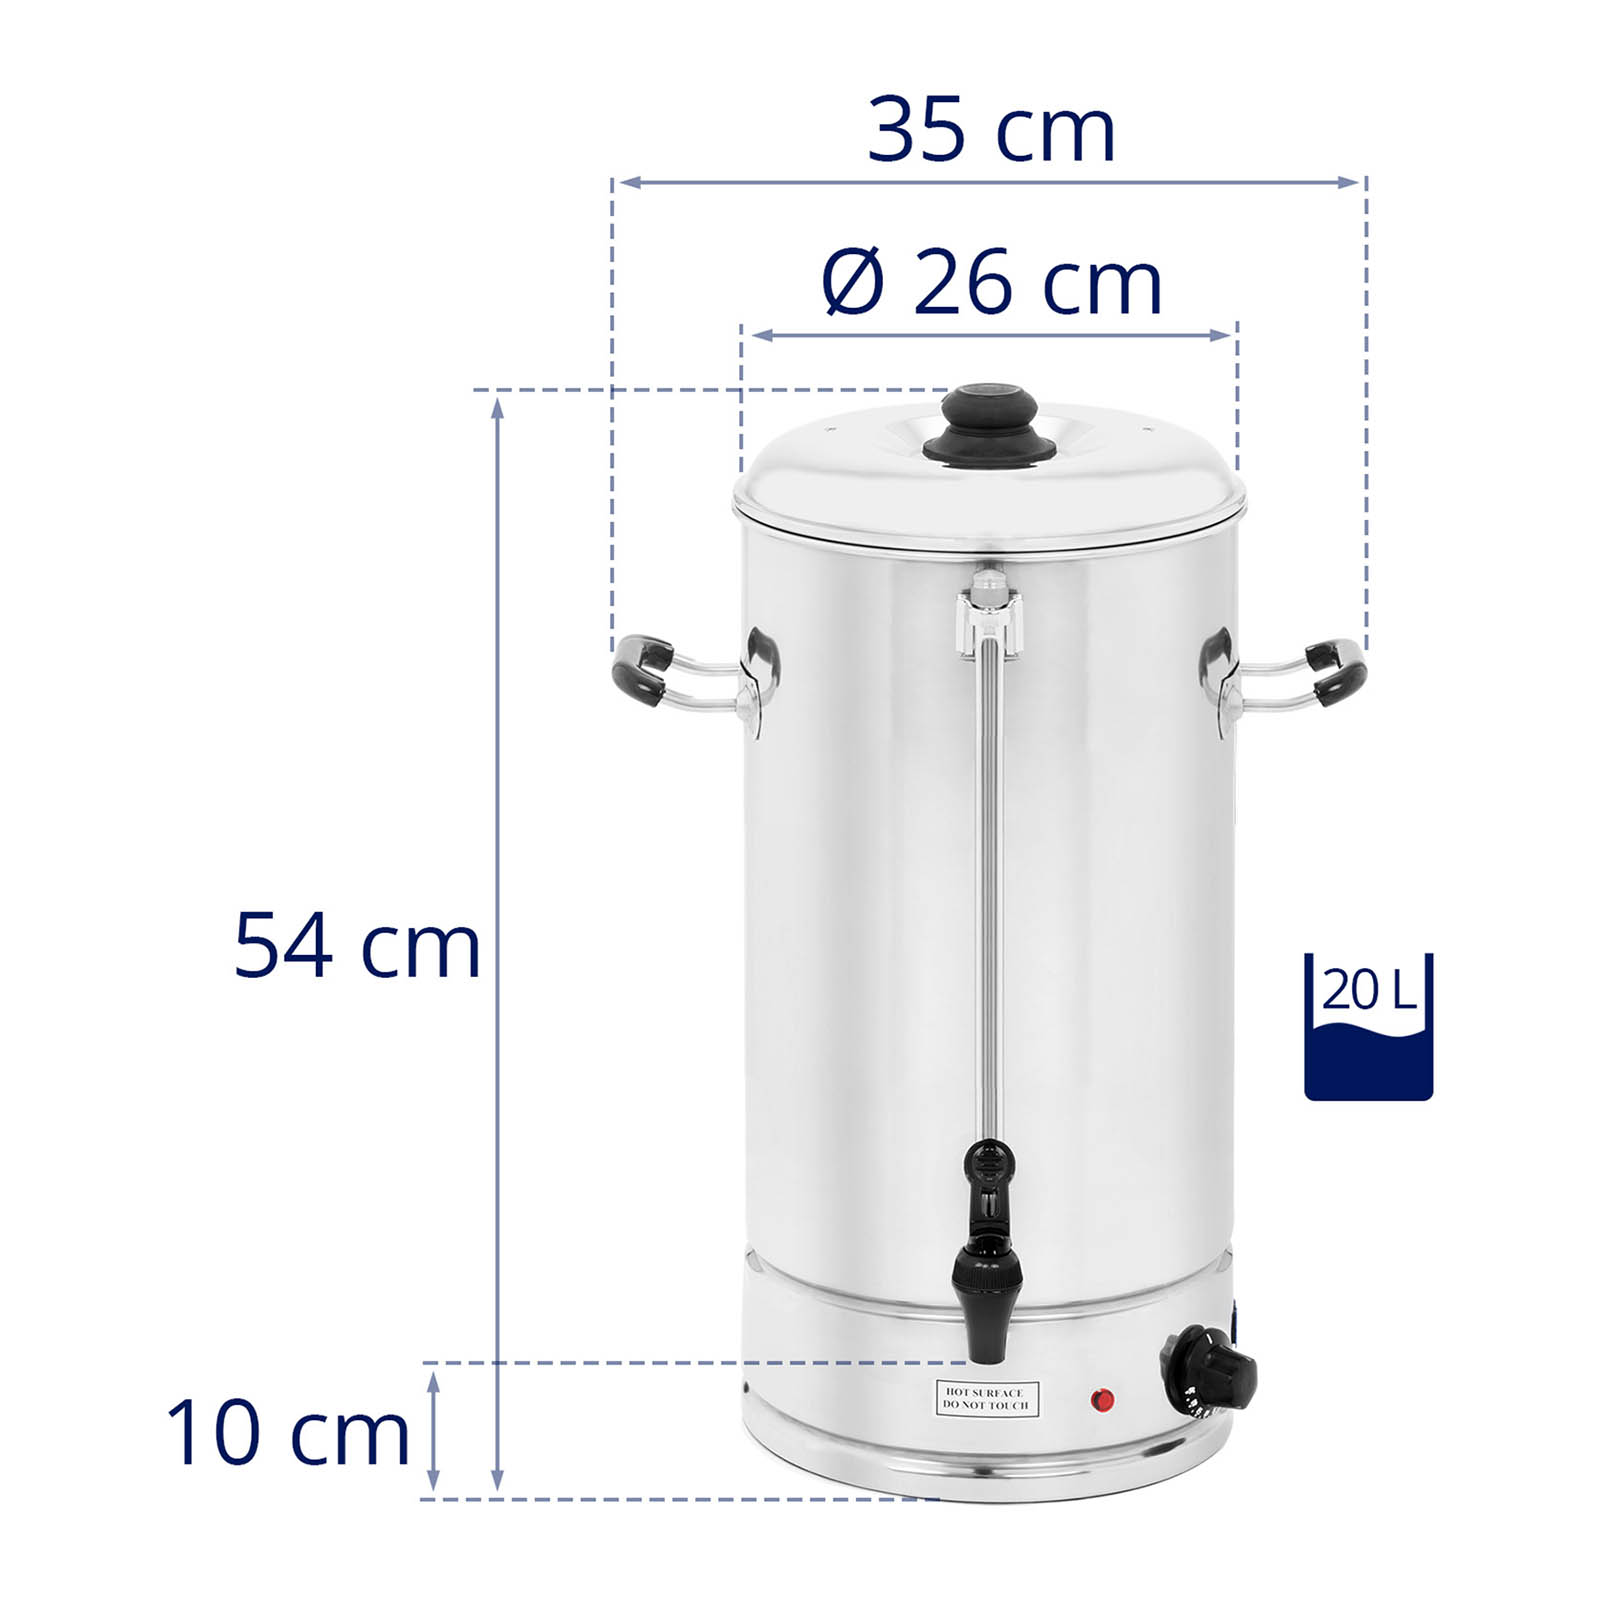 Heißwasserspender - 20 Liter -2.500 W